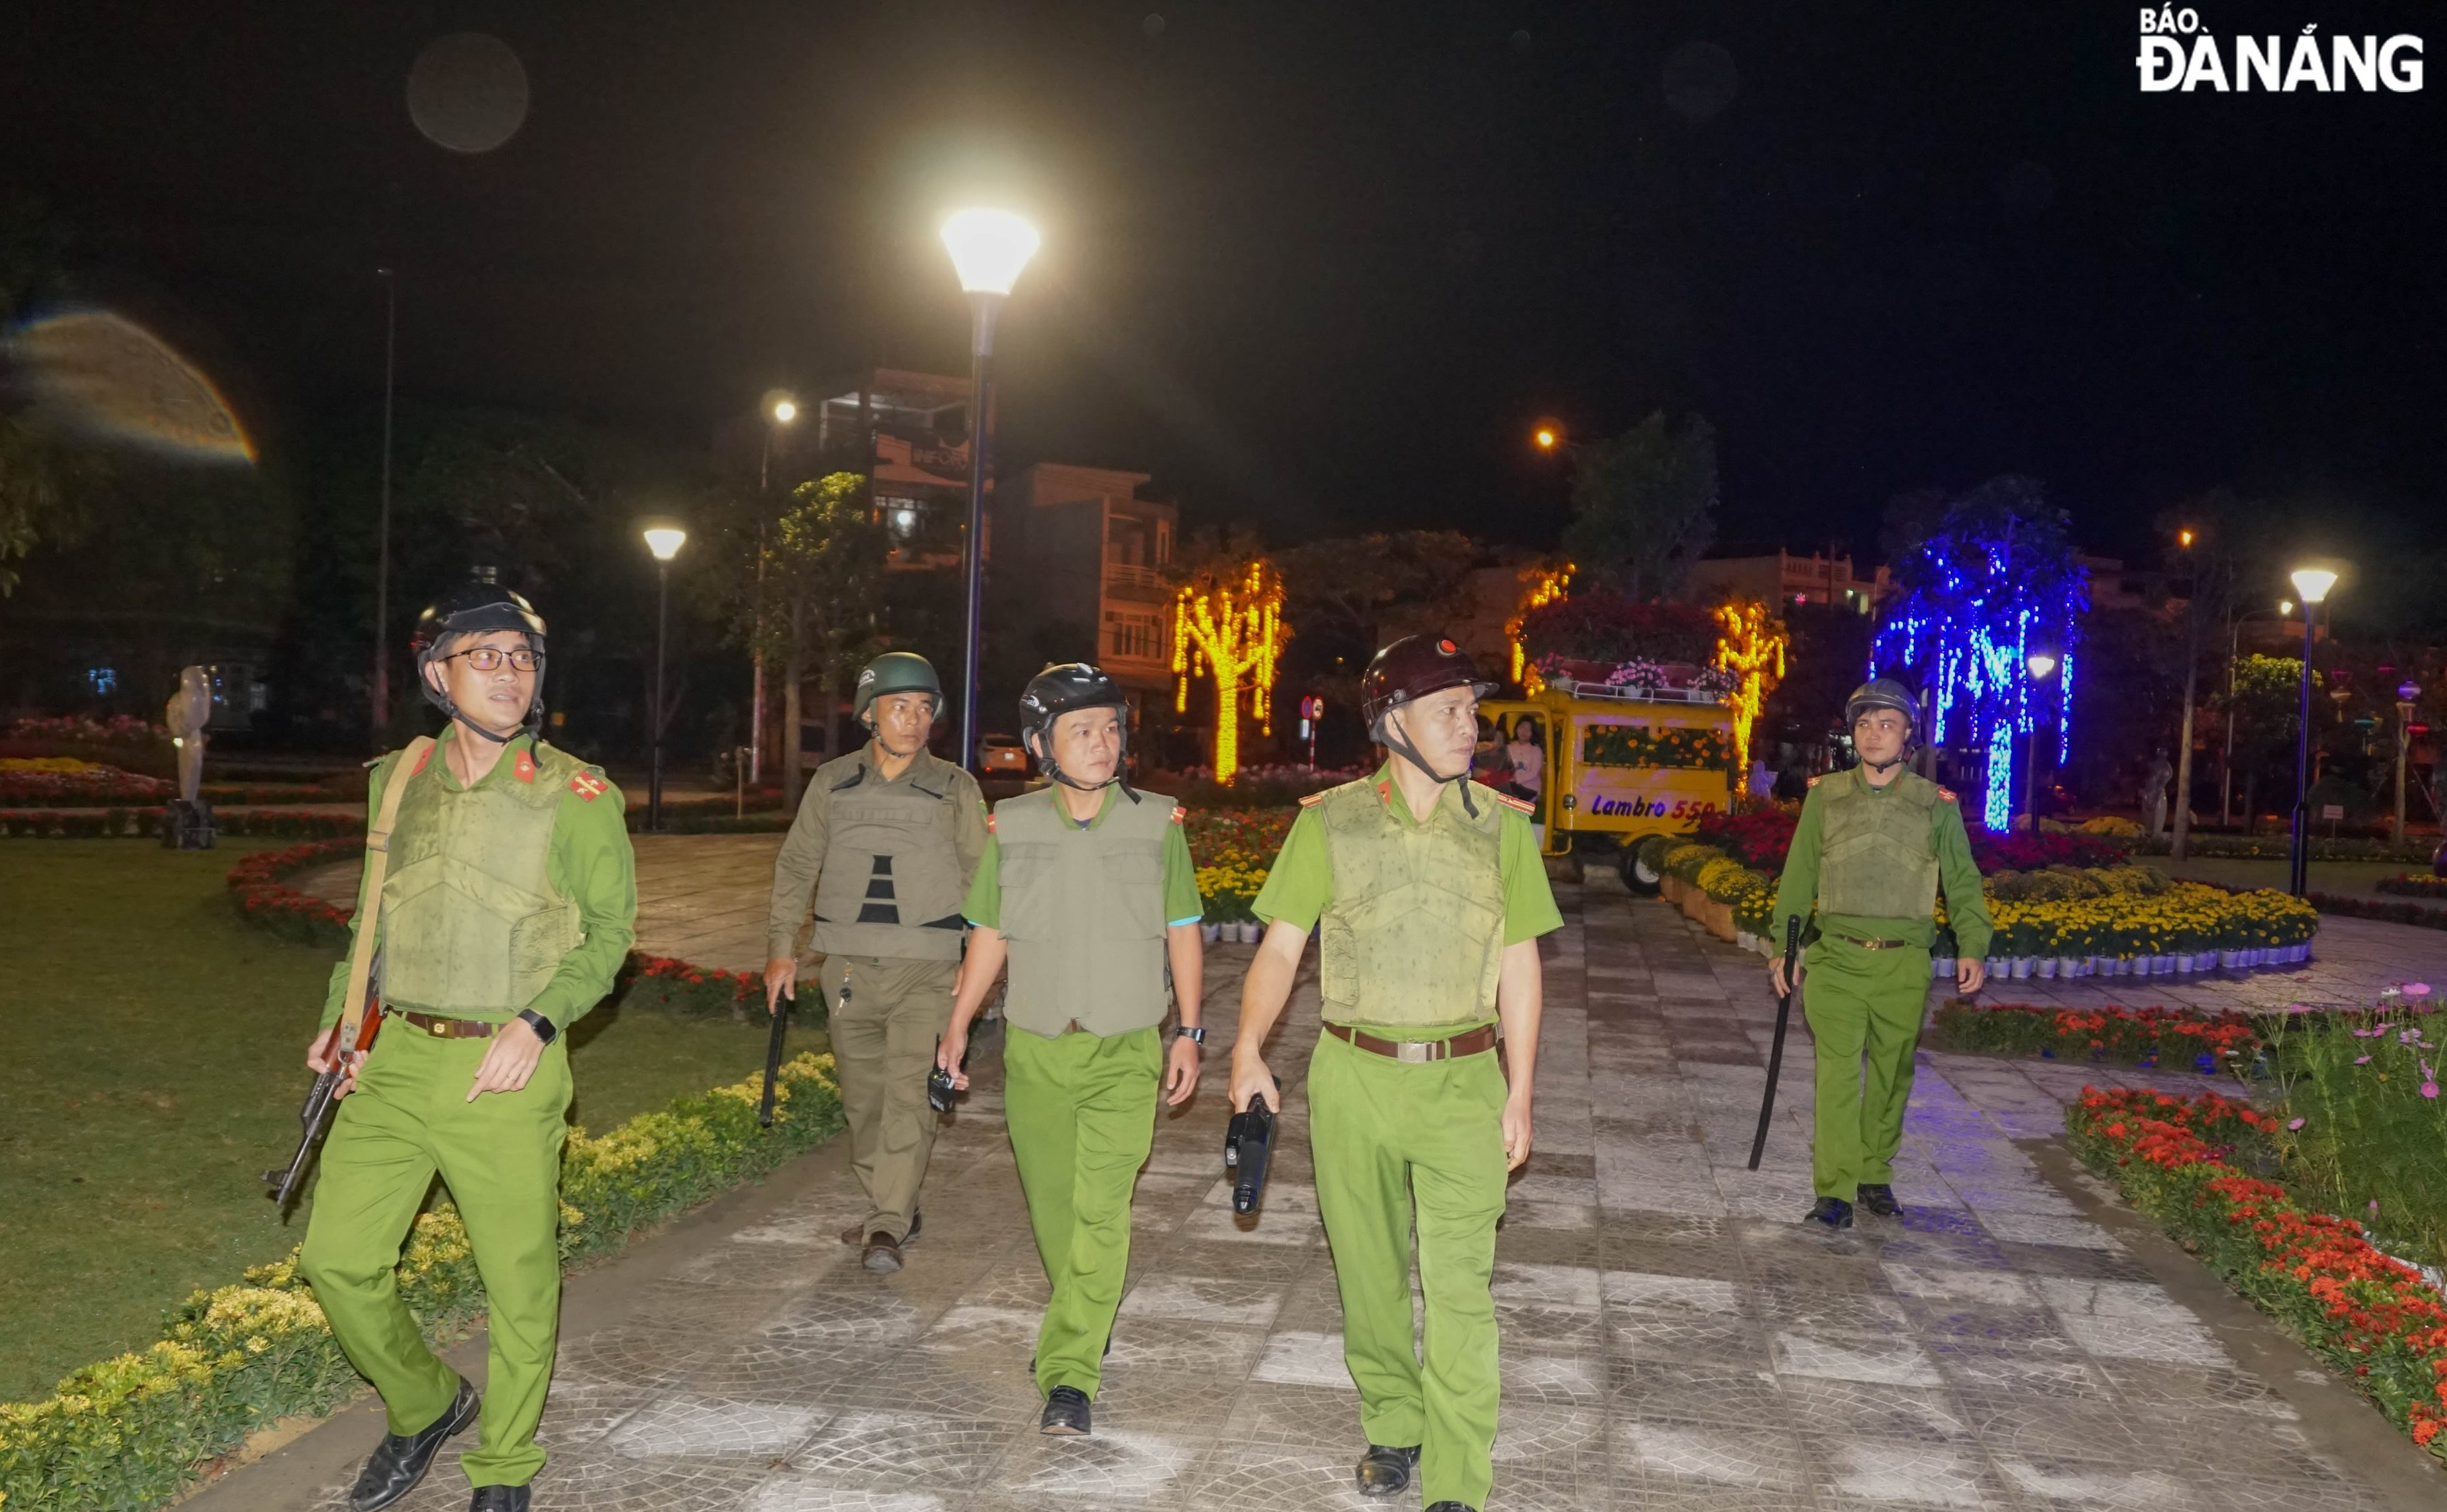 Lực lượng tuần tra 8394 - Công an phường Hòa Hải (quận Ngũ Hành Sơn) thực hiện nhiệm vụ bảo đảm an ninh, an toàn để người dân vui xuân, đón Tết an yên, hạnh phúc.